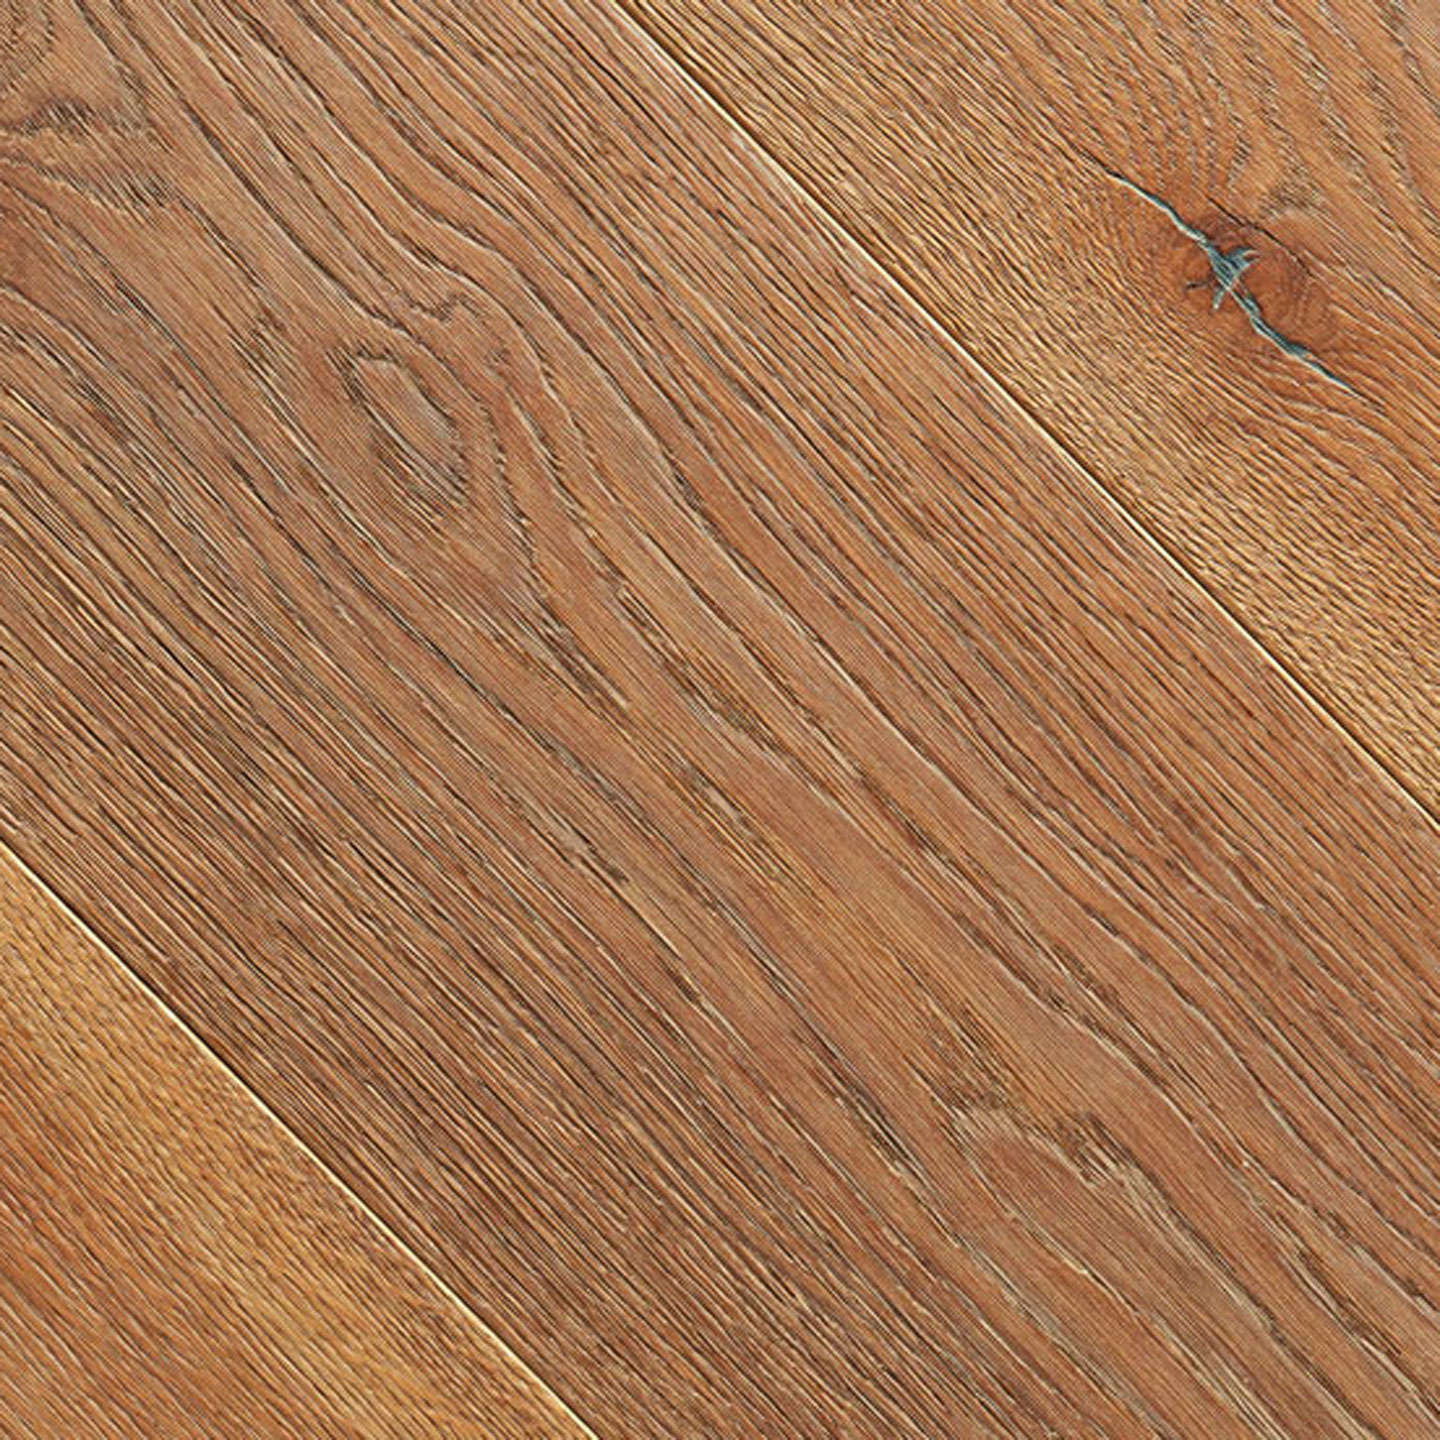 Brushed White Oak Wood Flooring